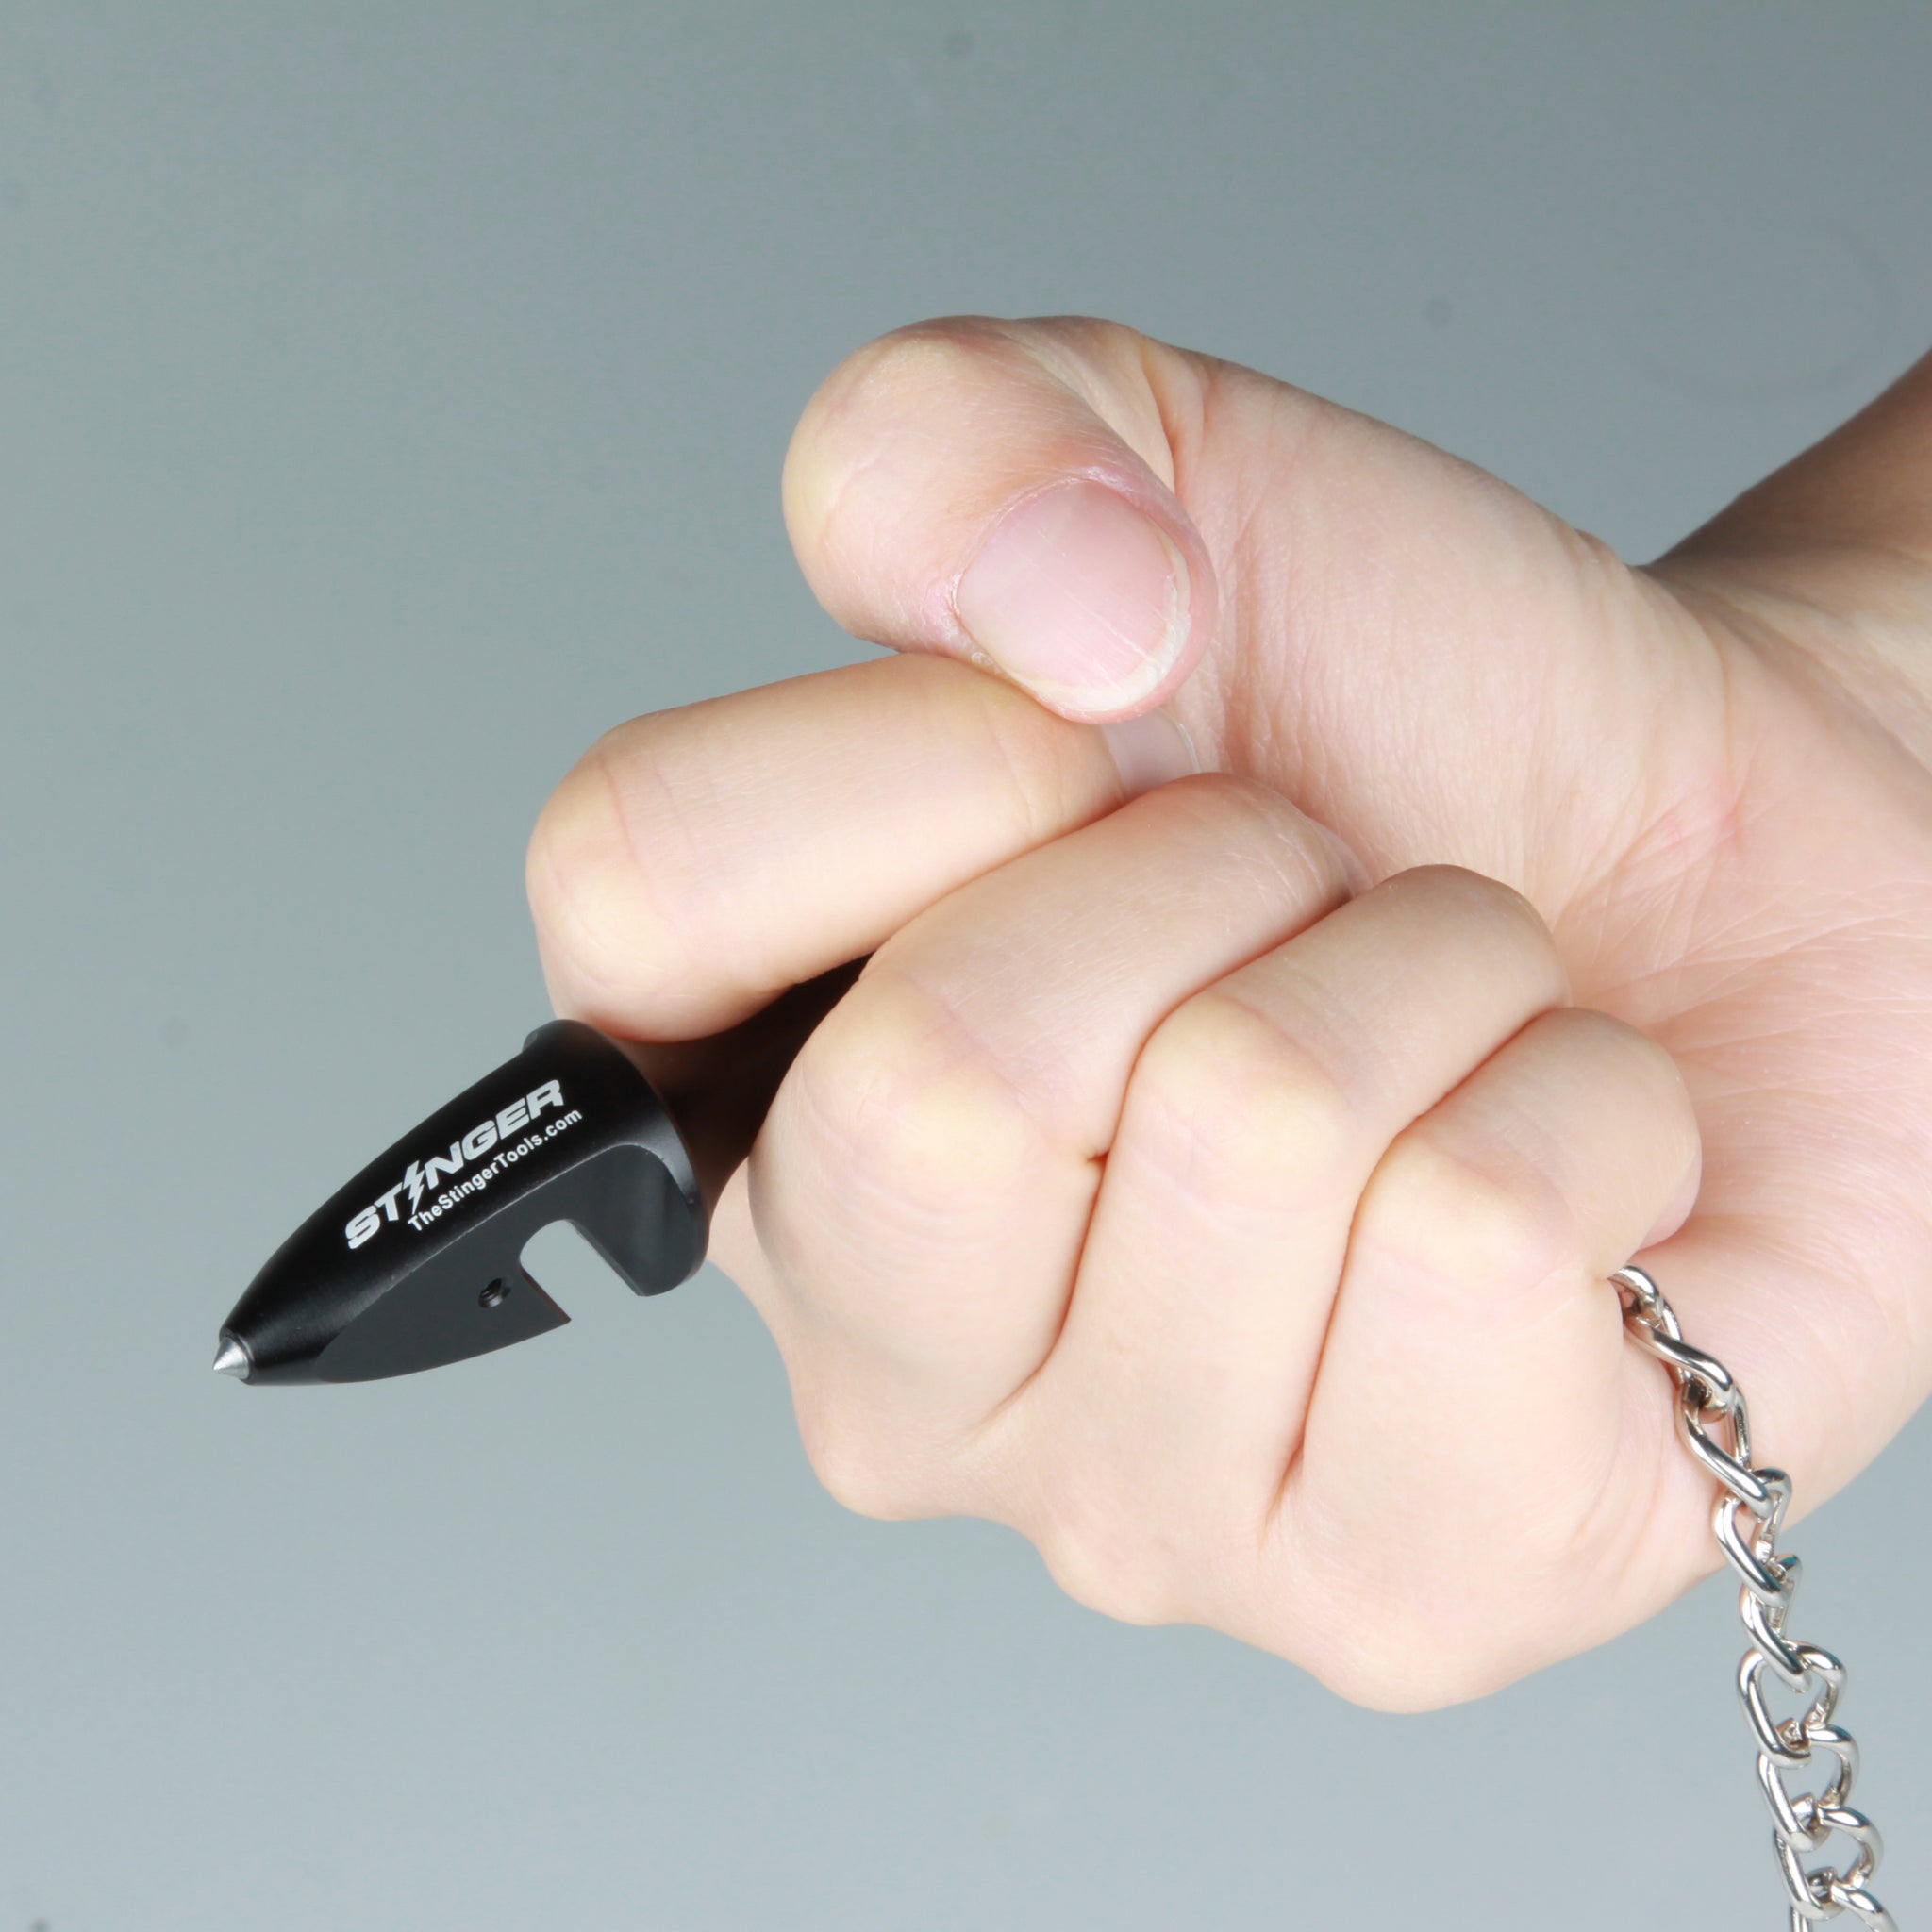 Car Safety Hammer Keychain Emergency Self-help Escape Tool Car